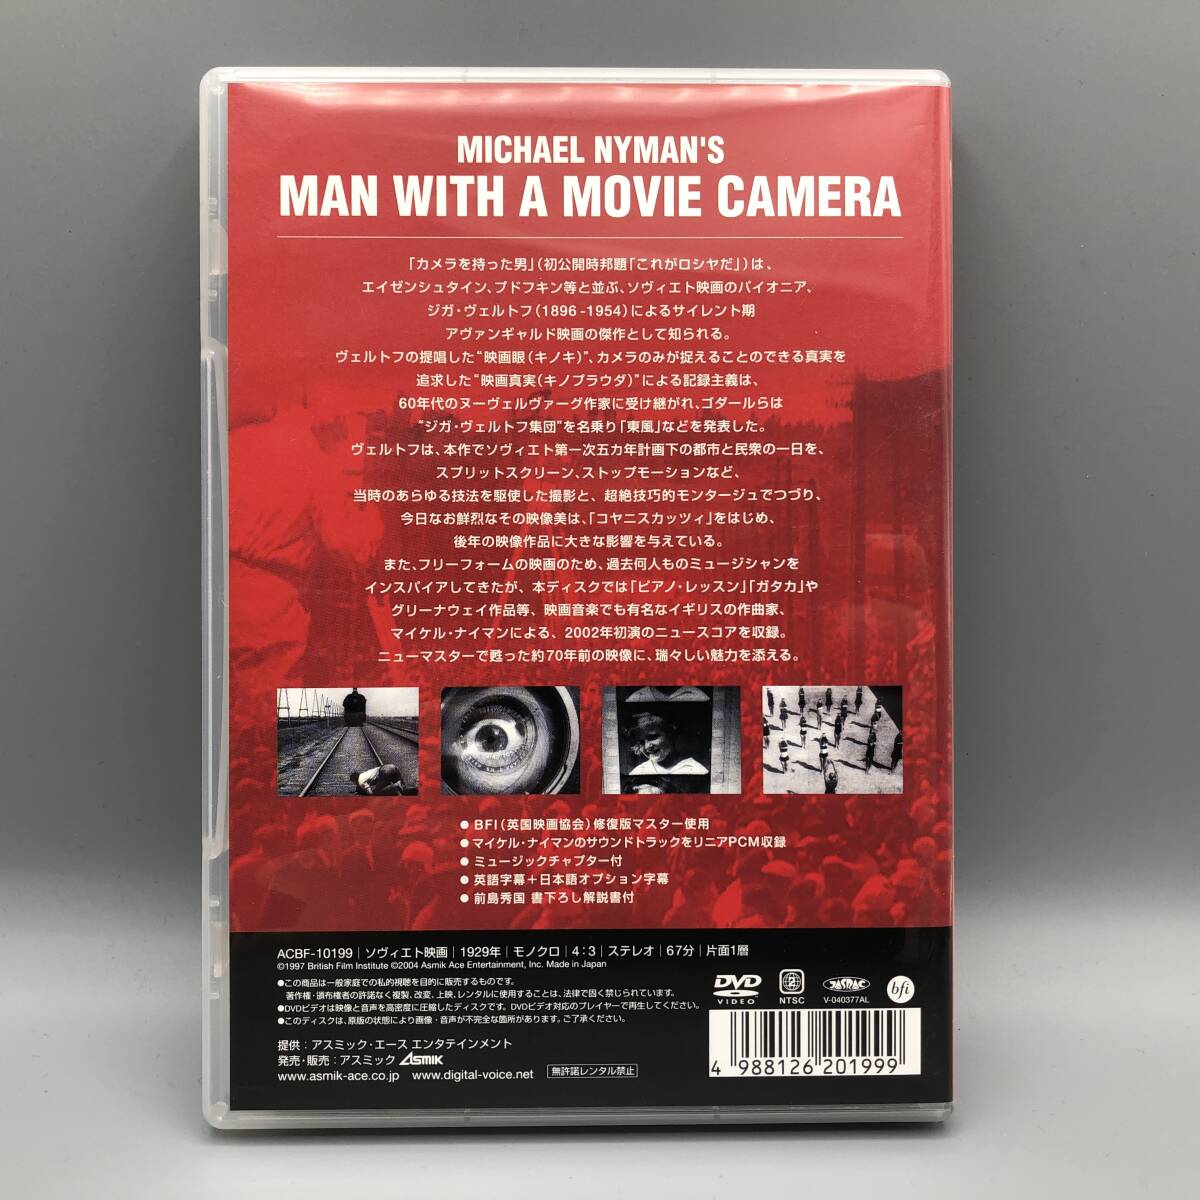  Michael *nai man [ camera .... man (MAN WITH A MOVIE CAMERA)] DVD